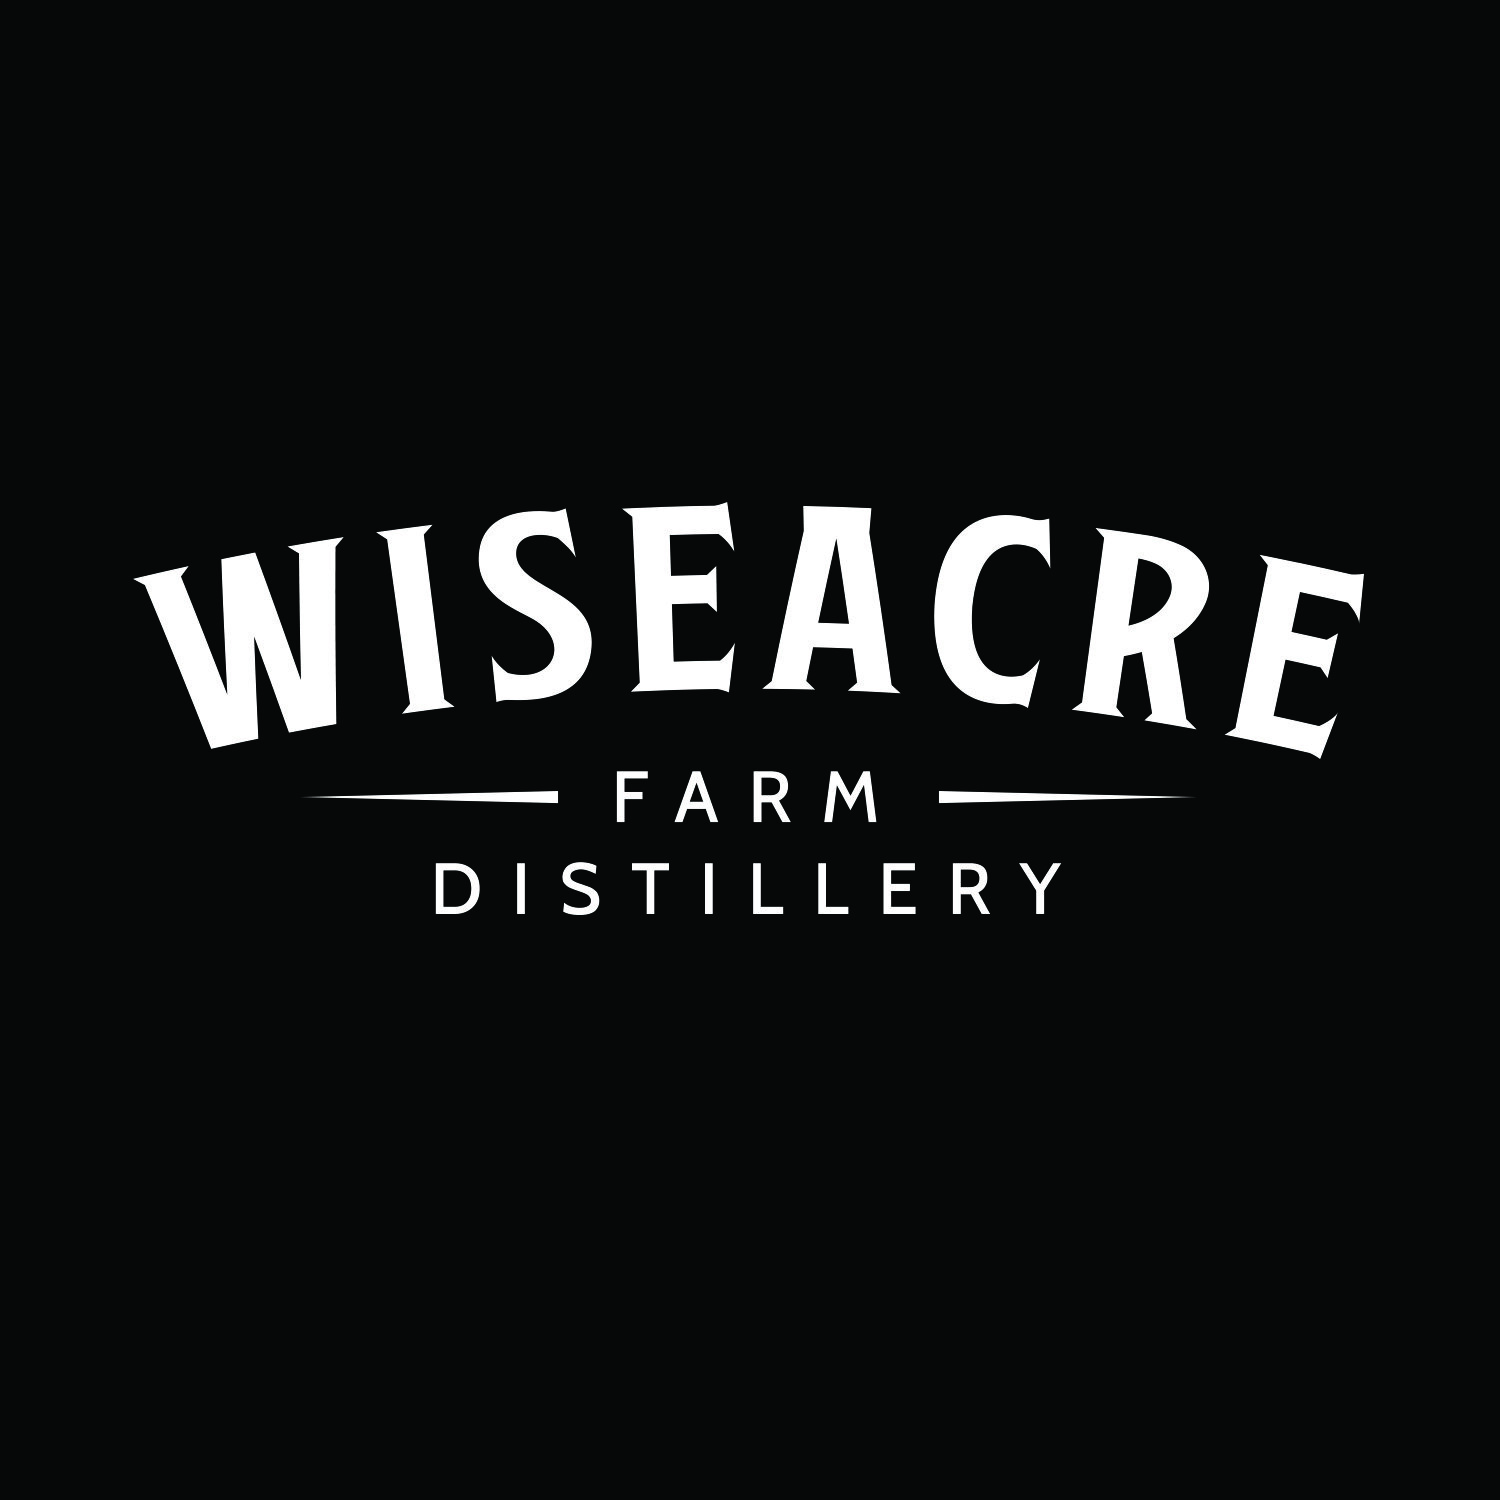 wiseacre farm distillery logo.jpg